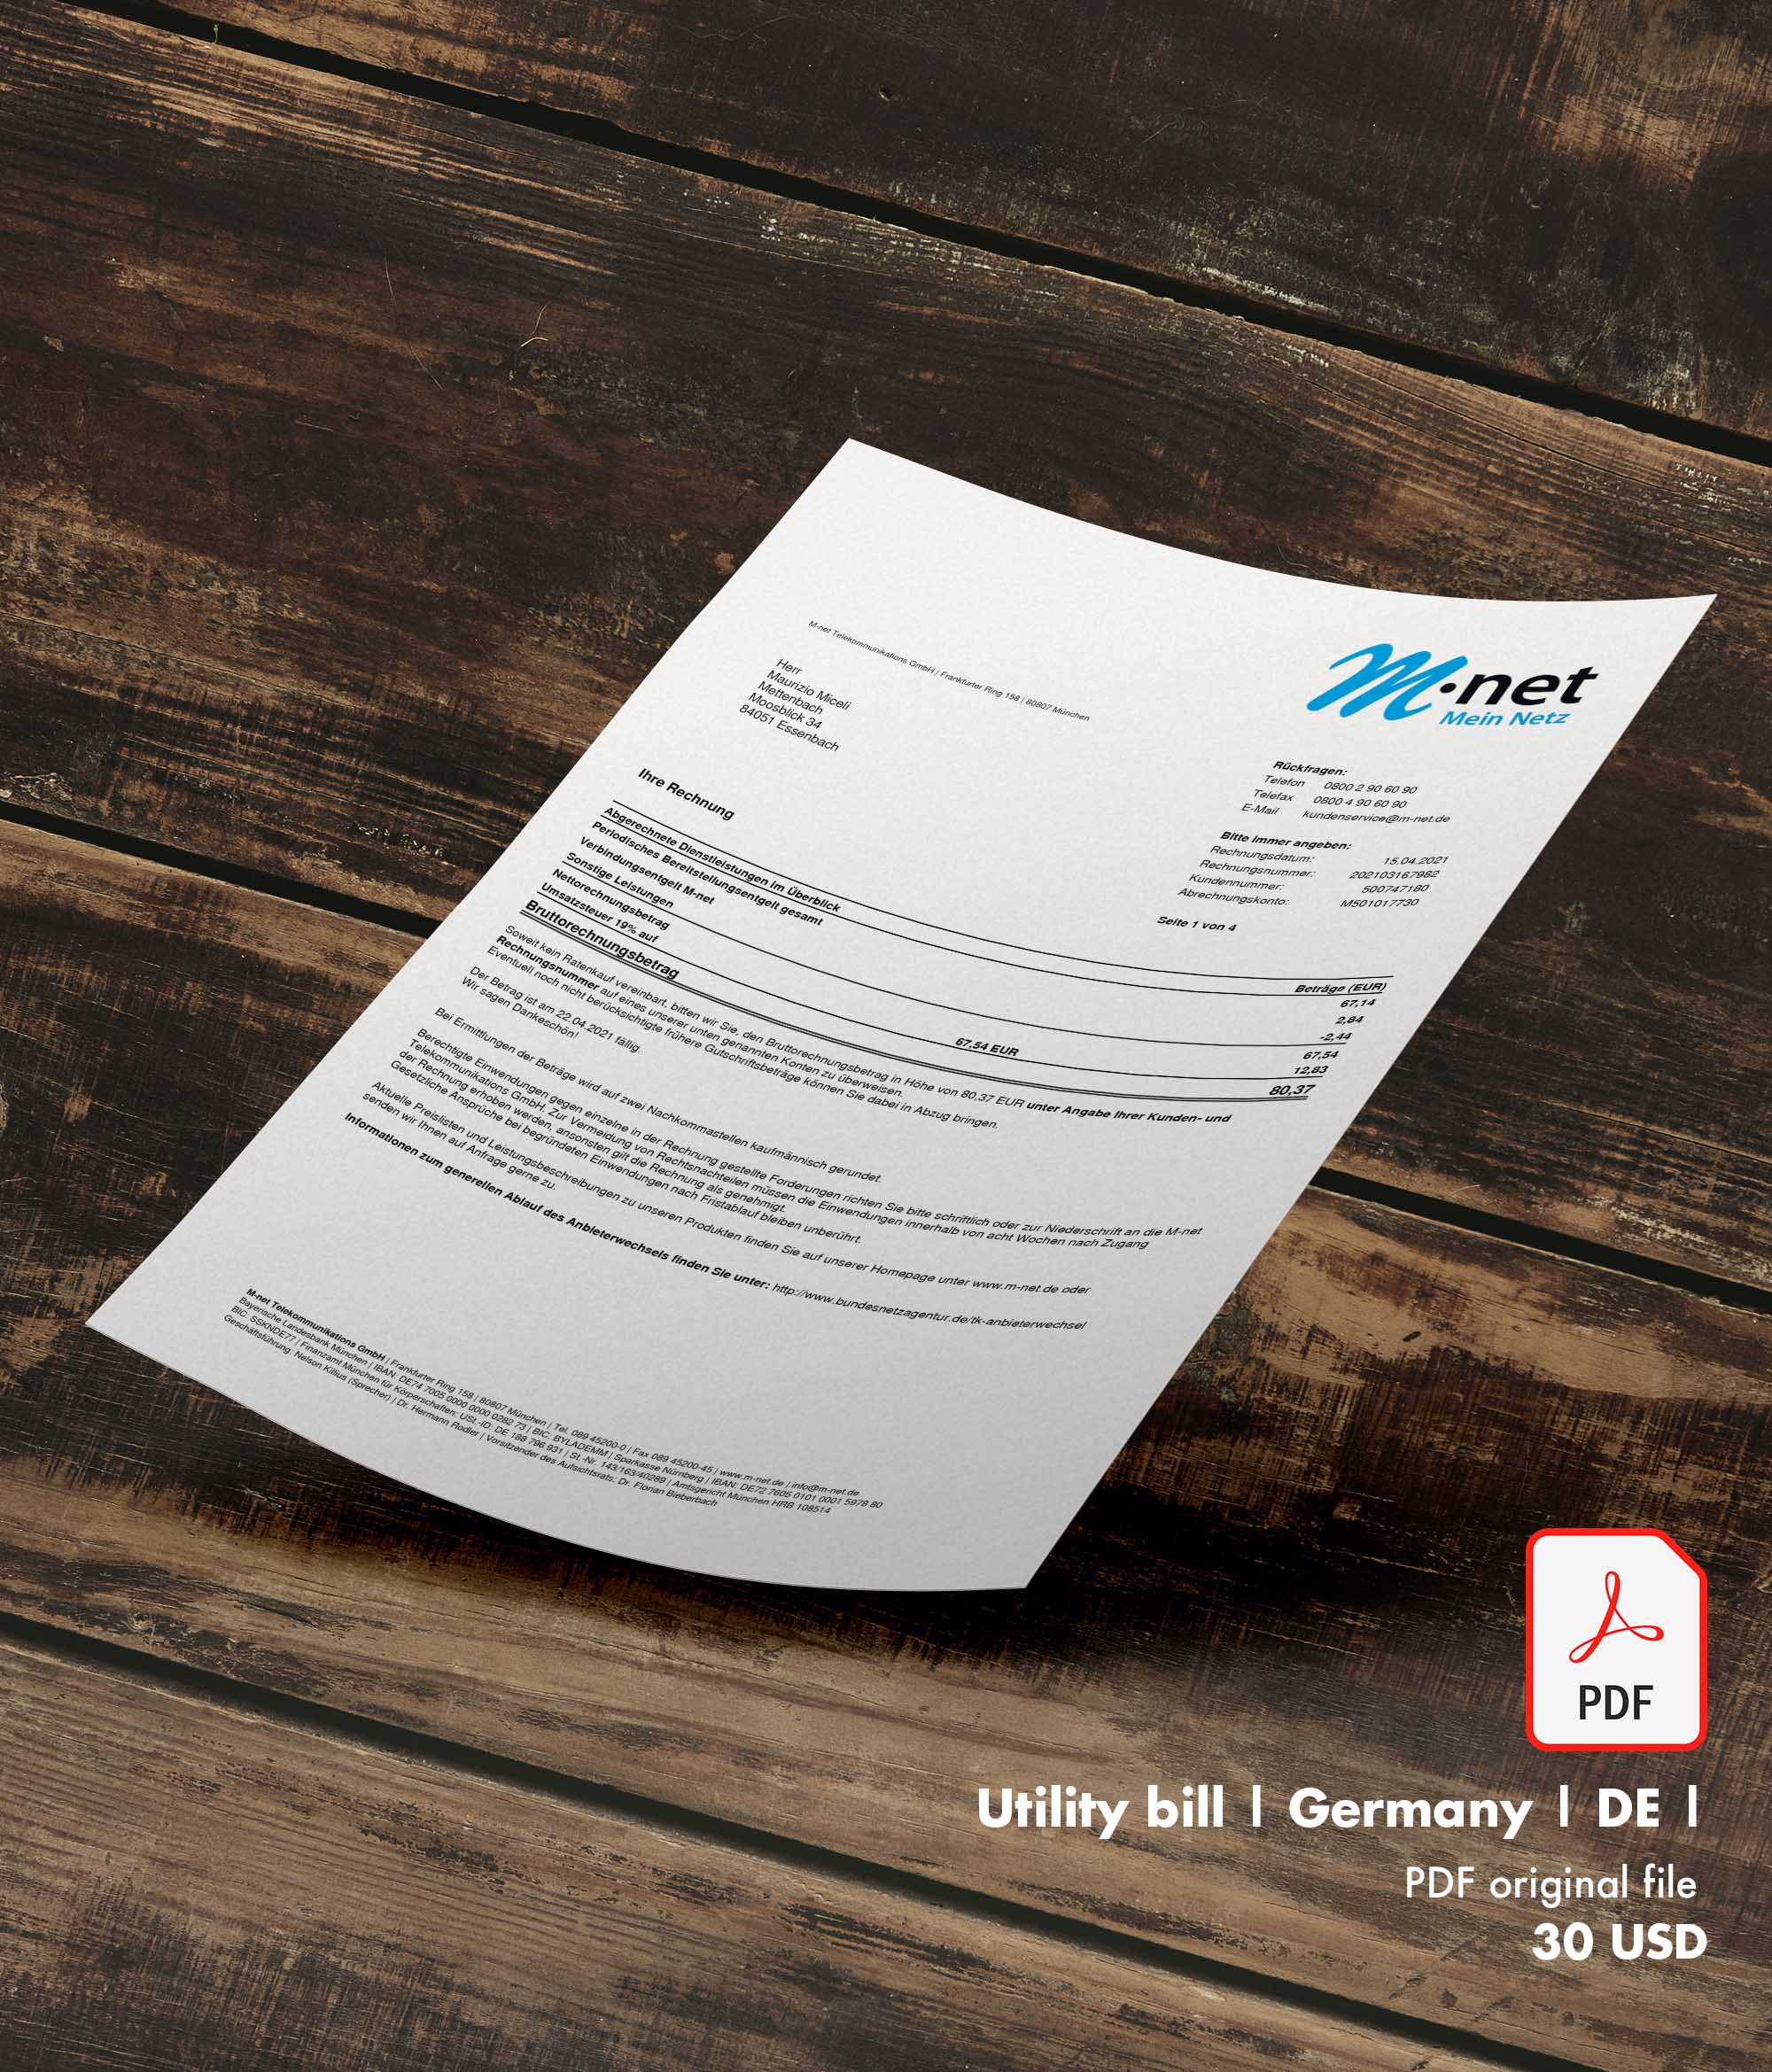 Utility bill | M-net | Germany | DE-0